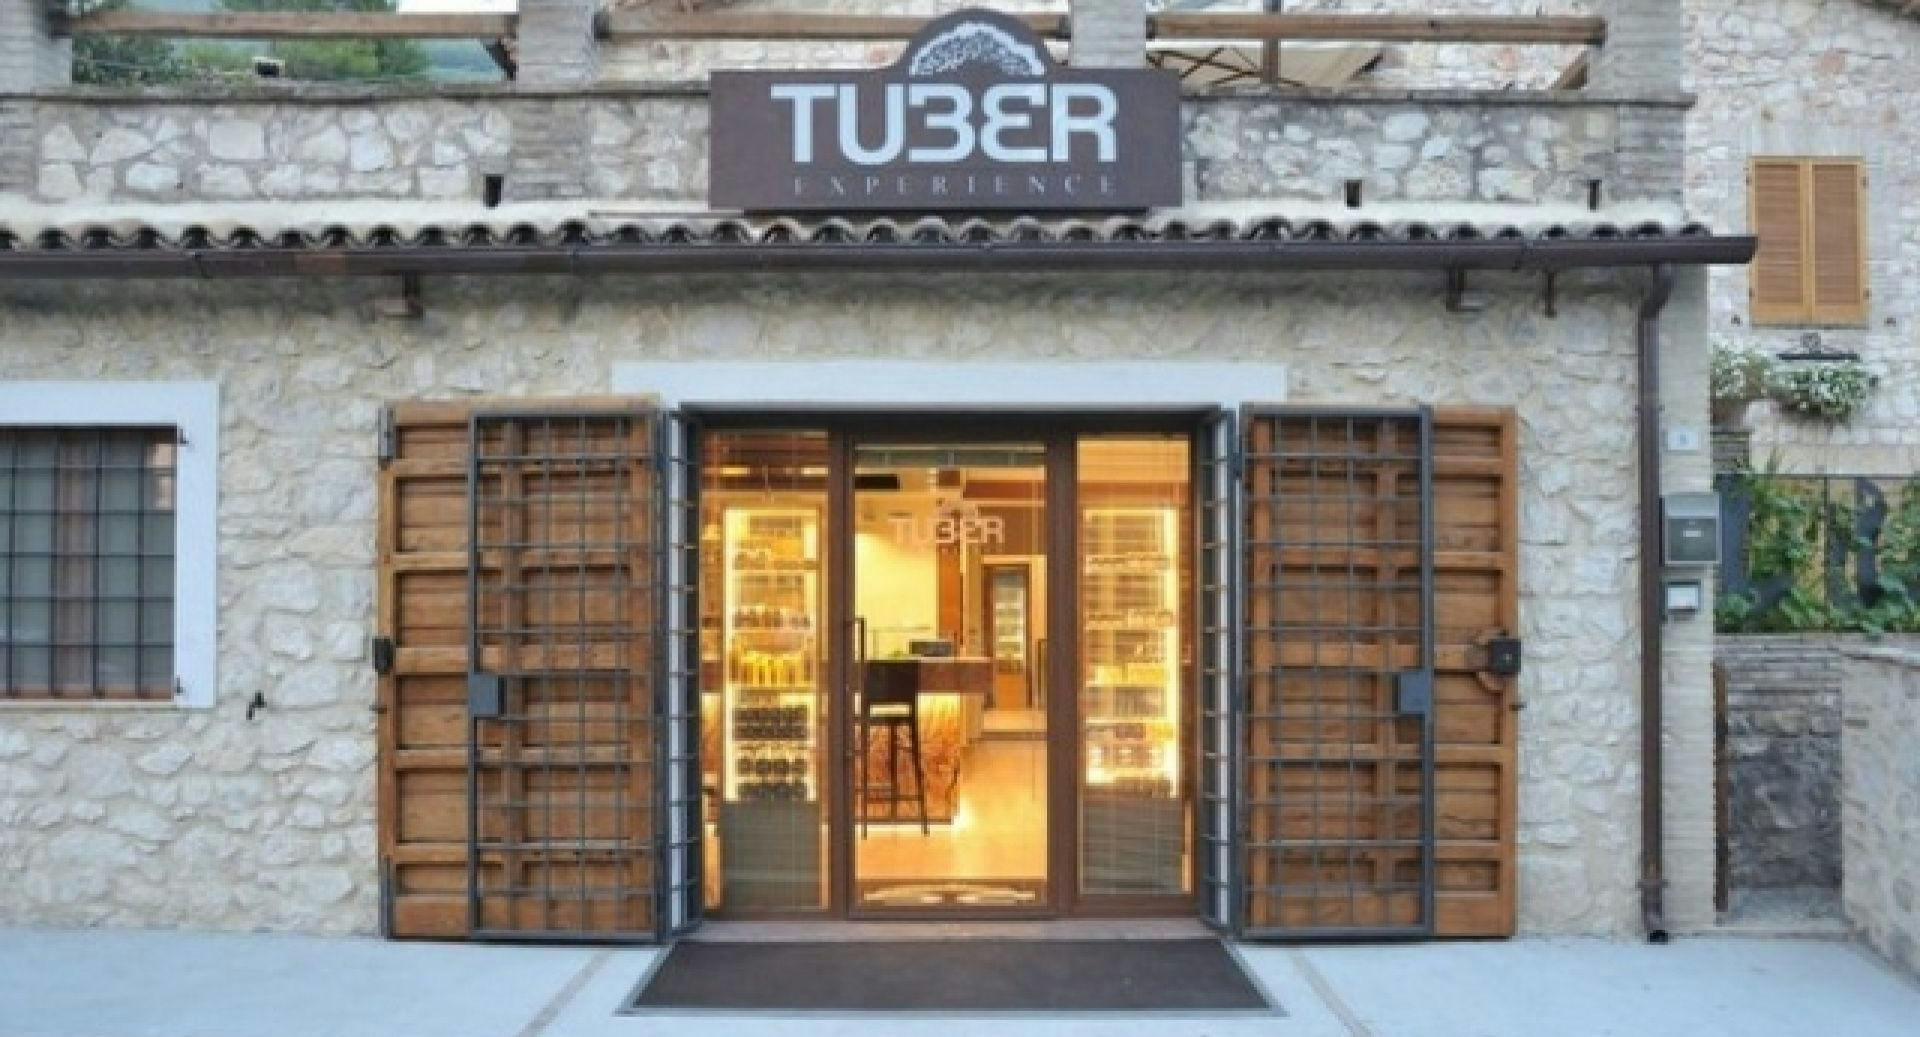 Foto del ristorante Tuber Experience a Campello sul Clitunno, Perugia